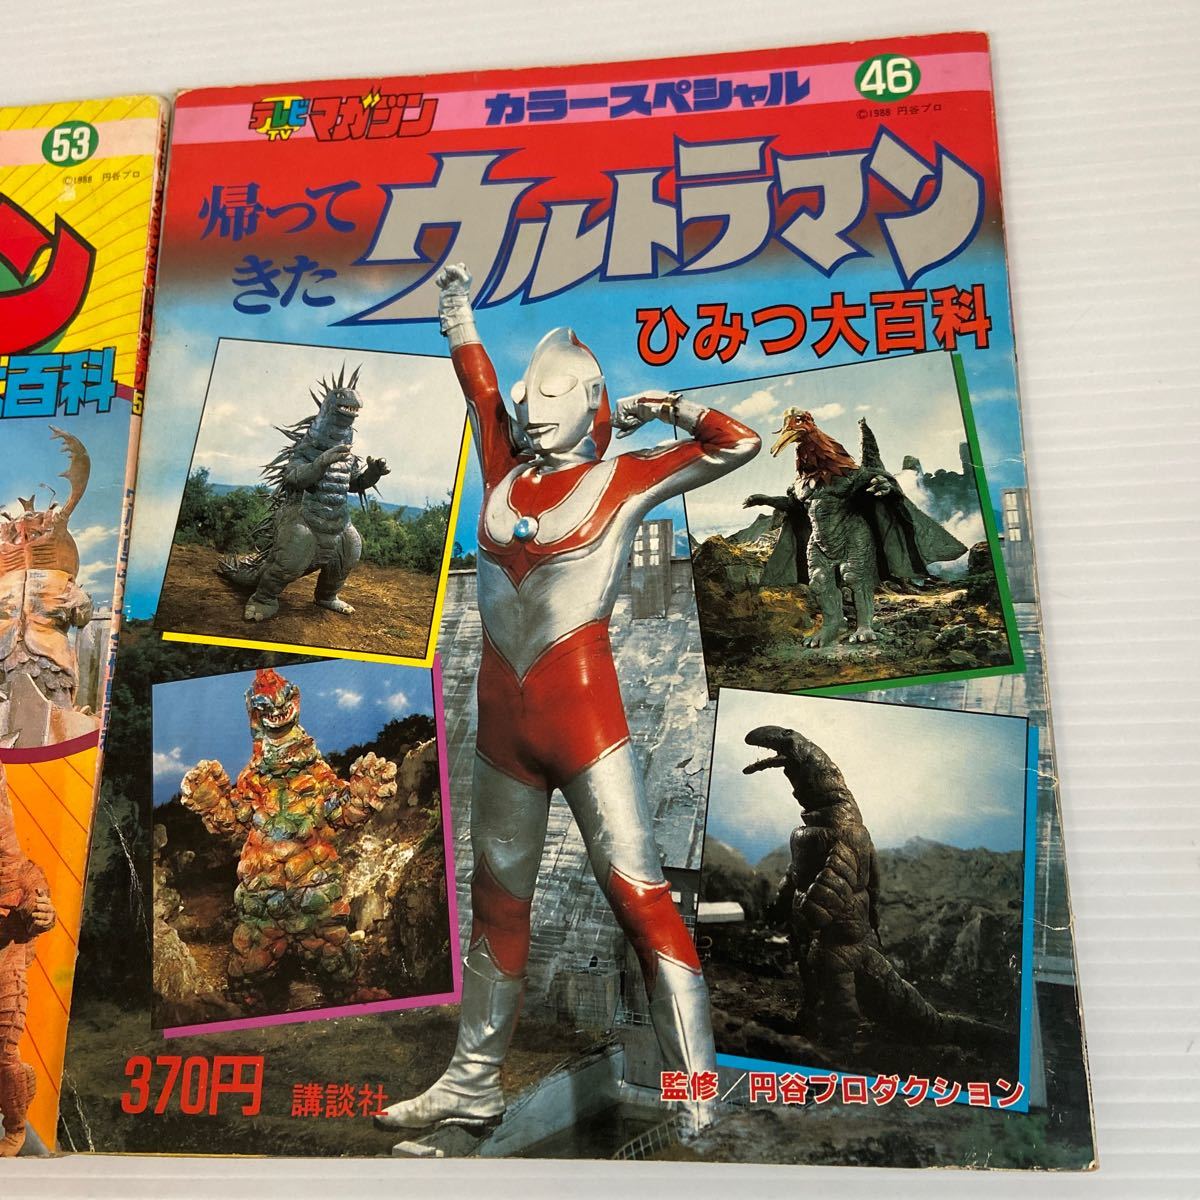  телевизор журнал цвет специальный 53/46 [ Ultraman все монстр различные предметы ][ секрет большой различные предметы ]2 шт. комплект 